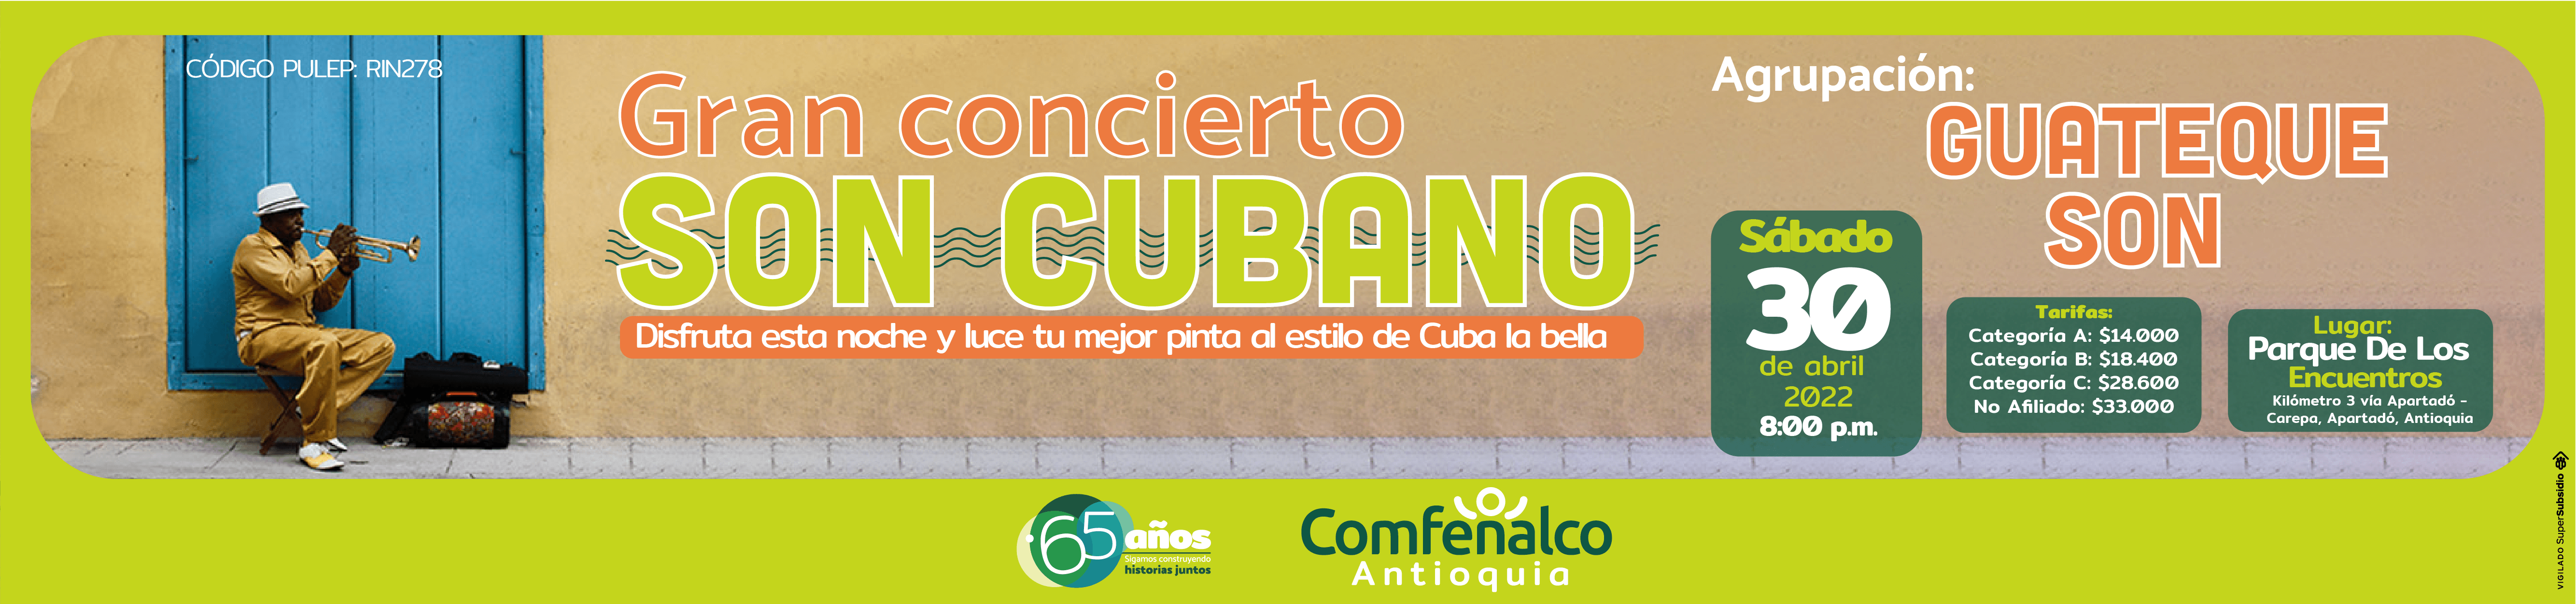 Concierto de Son cubano en Parque de Los Encuentros